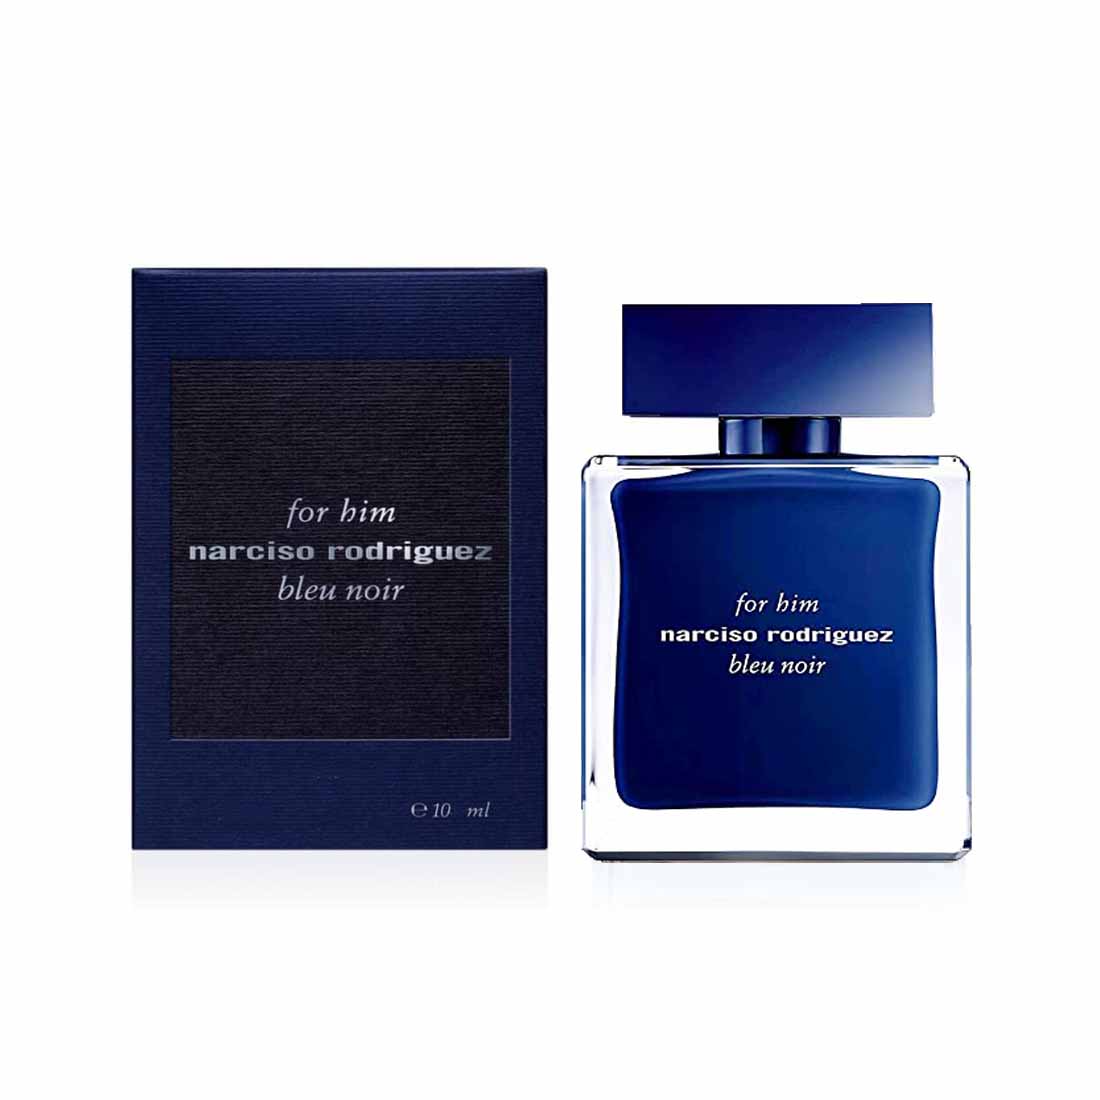 Narciso Rodriguez Bleu Noir EDT 10ml Miniature For Him